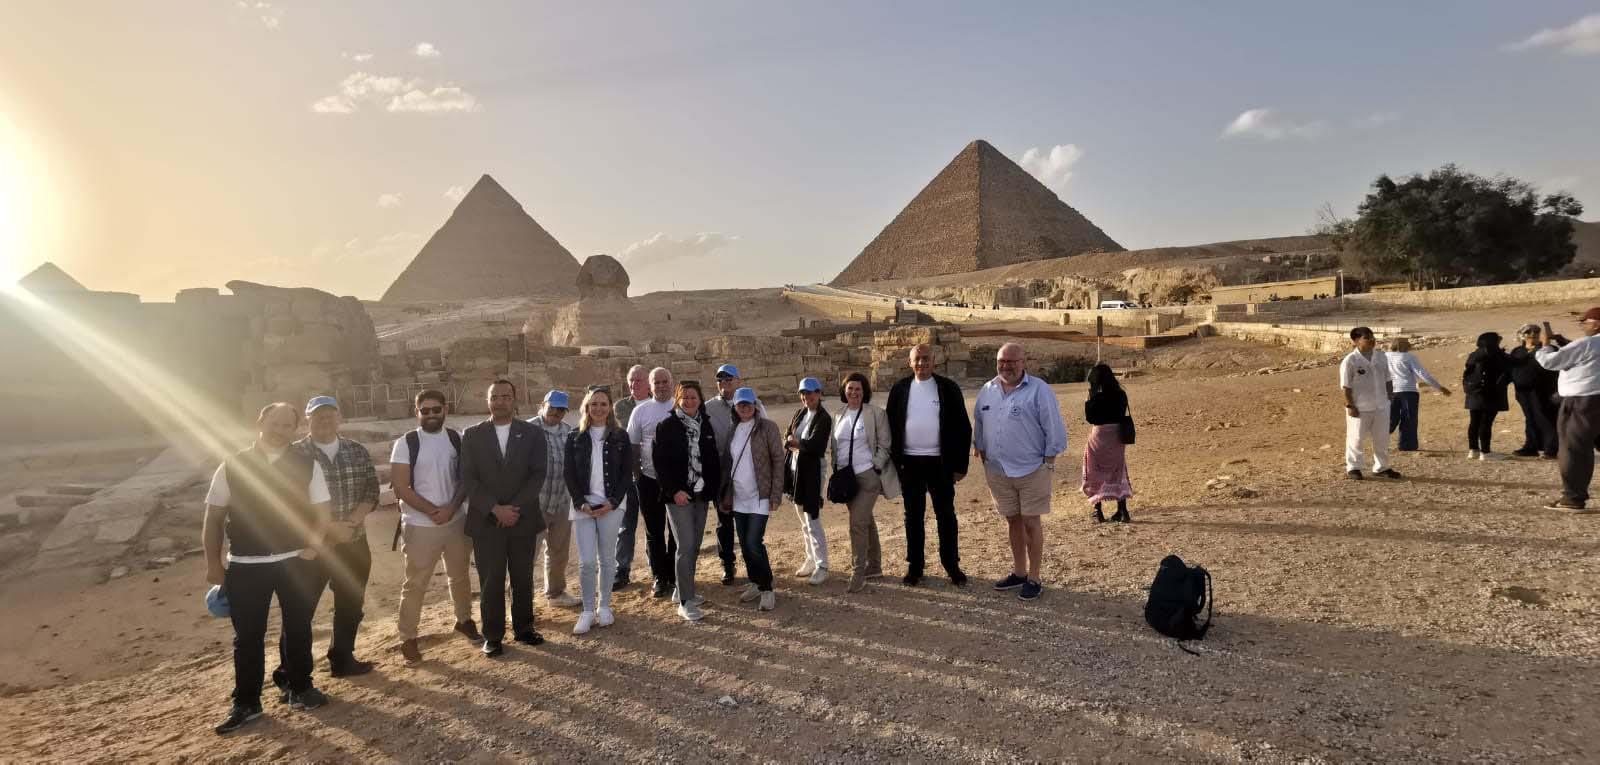 - وزارة السياحة والآثار تنظم الملتقى الترويجي الأول لمصر كمقصد لسياحة اليخوت 